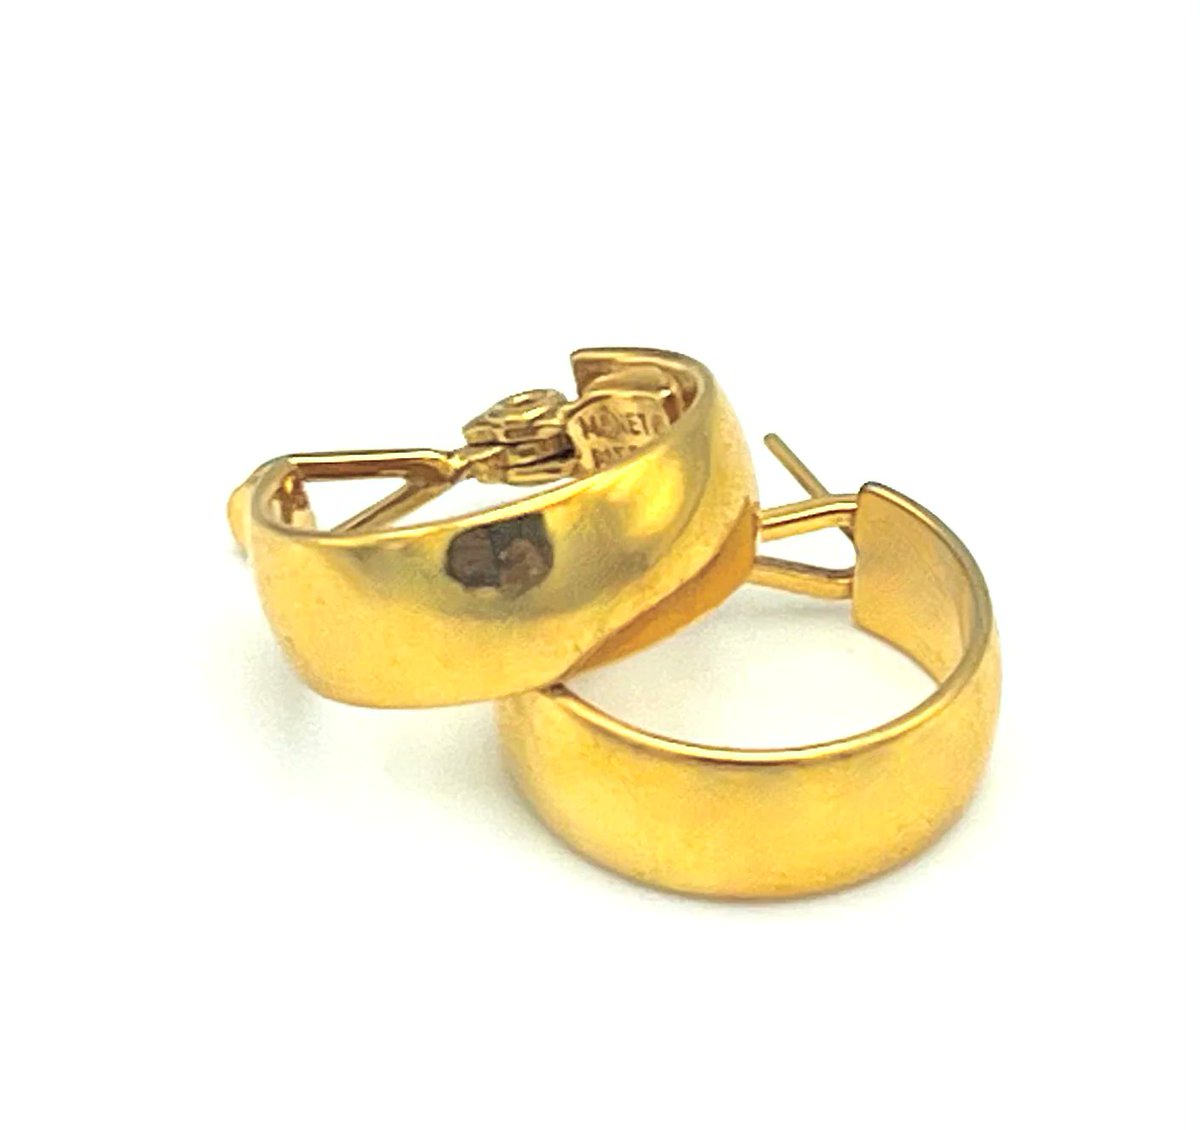 Gold Hoop Earrings Signed monet pierced earrings #ChunkyGoldEarrings #PiercedEarrings 
$20.00
➤ etsy.com/listing/122433…